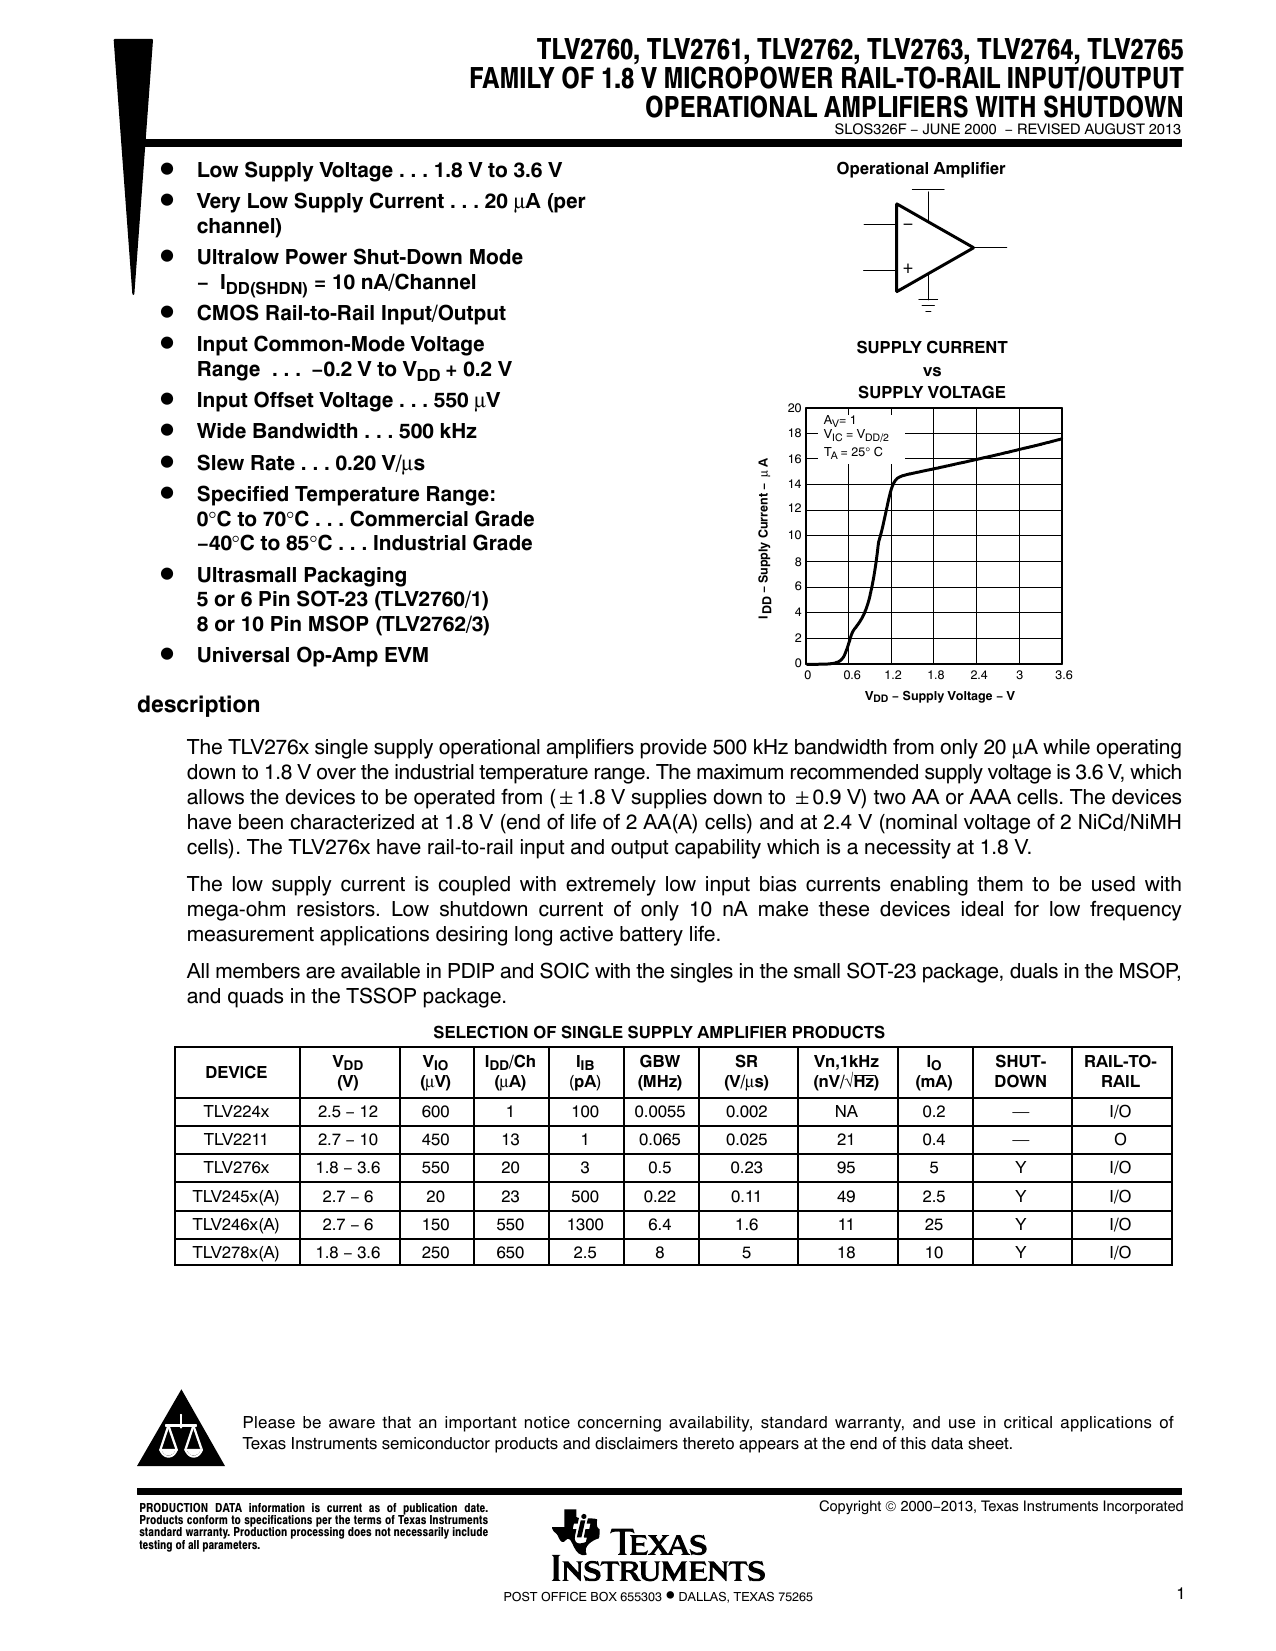 TSSOP 4 Amplifier 1.8V to 6V 14 Quad 0.6 V//µs 1 MHz Operational Amplifier